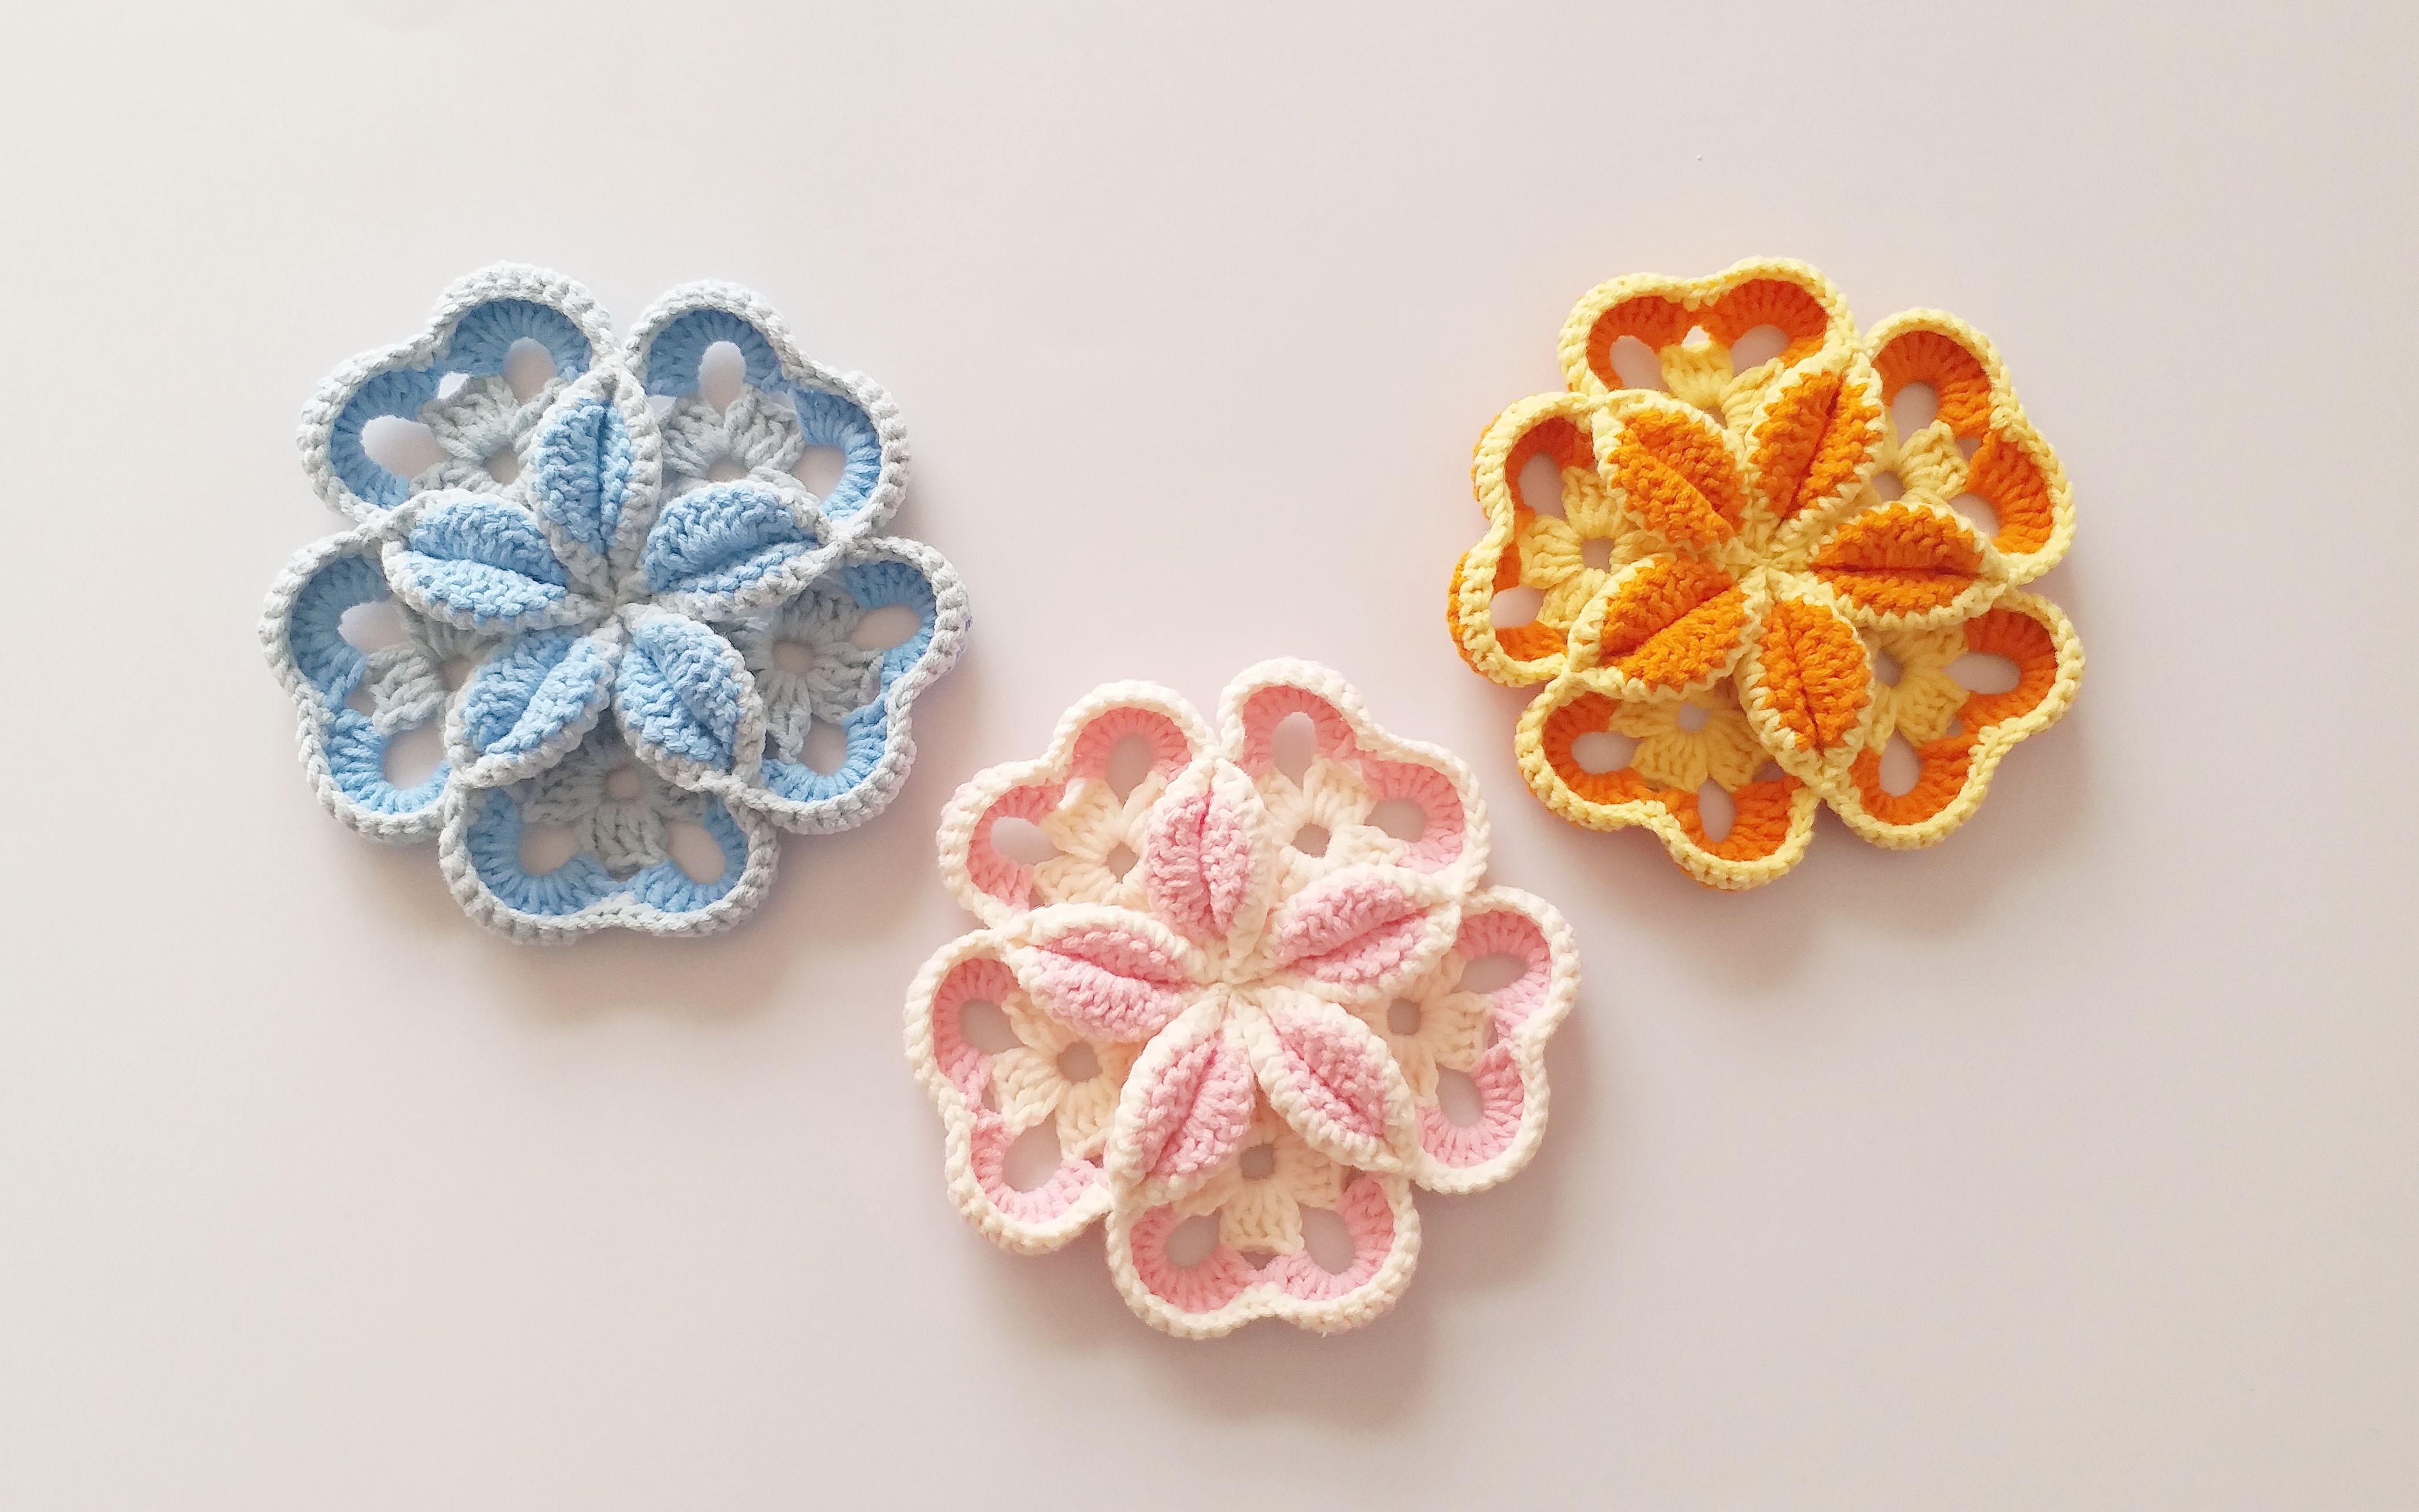 钩针编织5片单元花拼接而成3d立体花朵精致美丽用途广泛